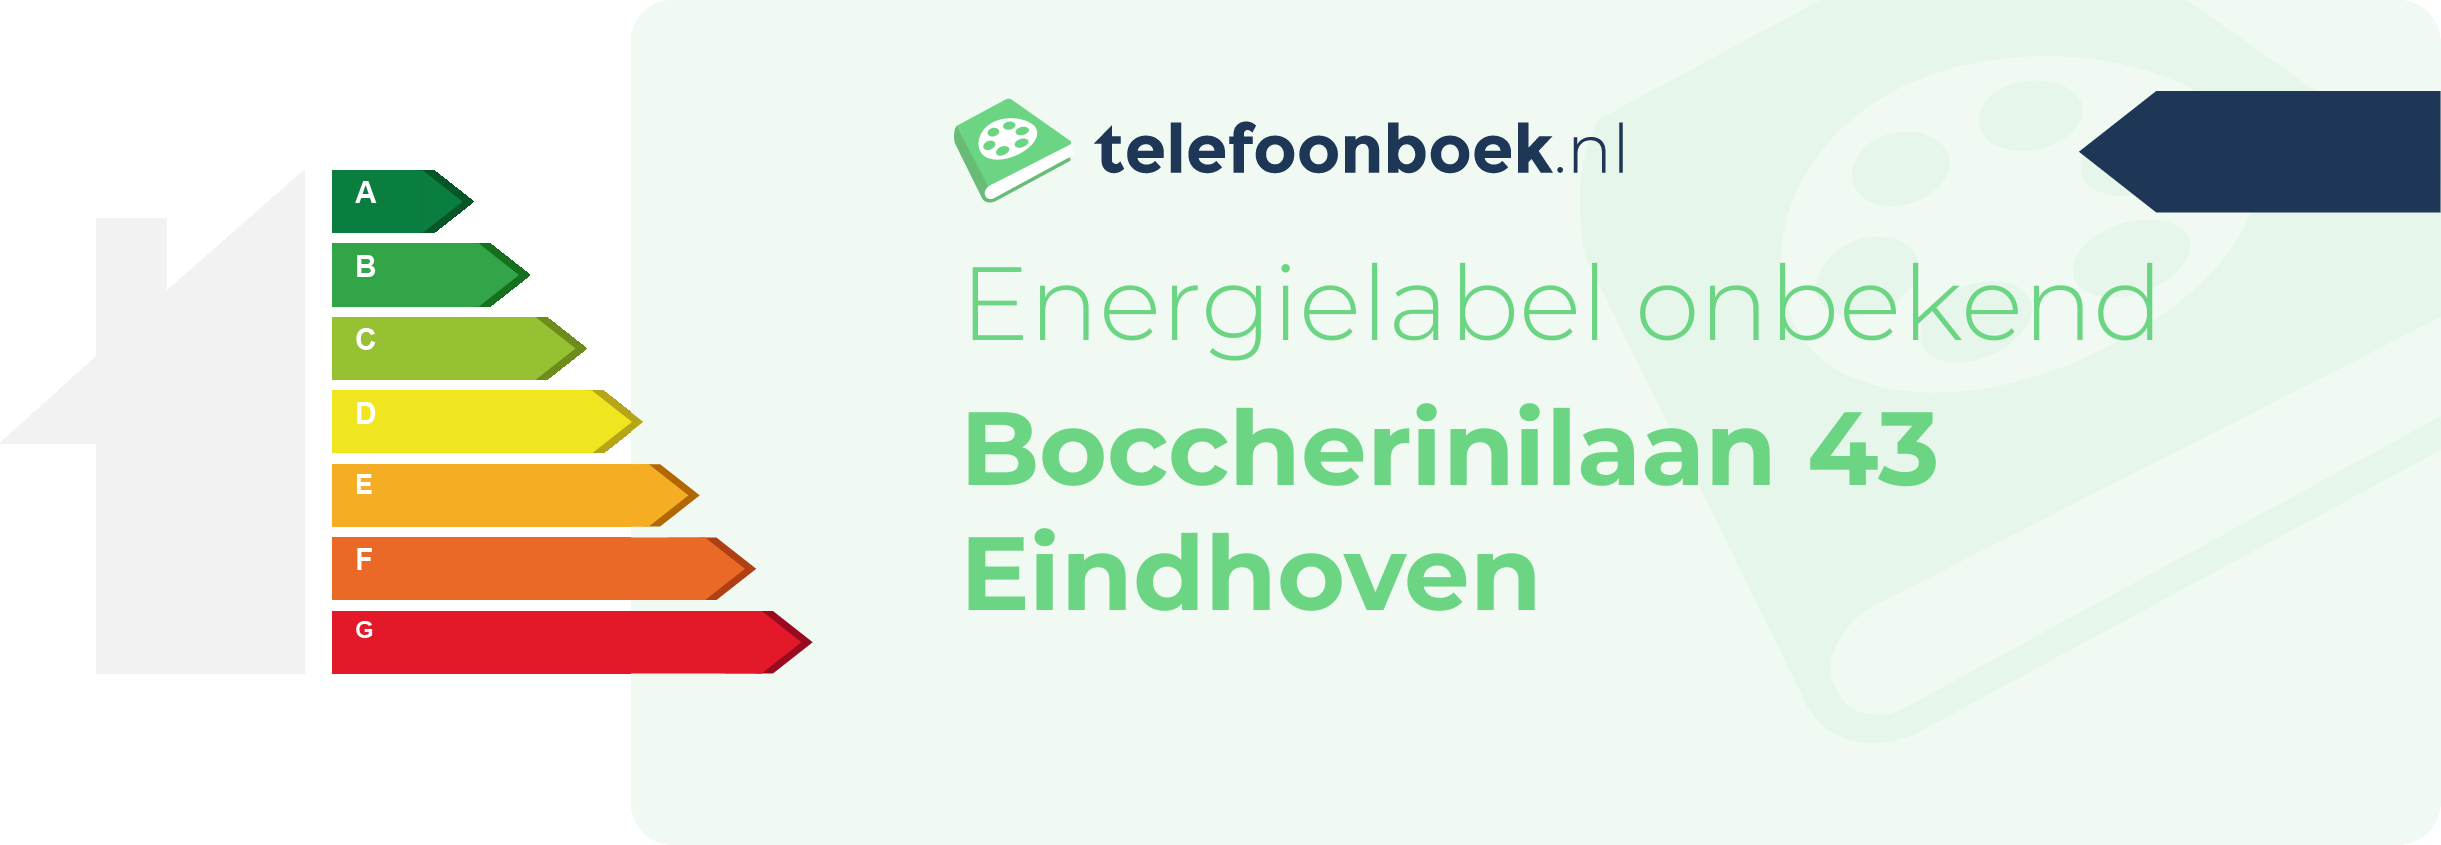 Energielabel Boccherinilaan 43 Eindhoven